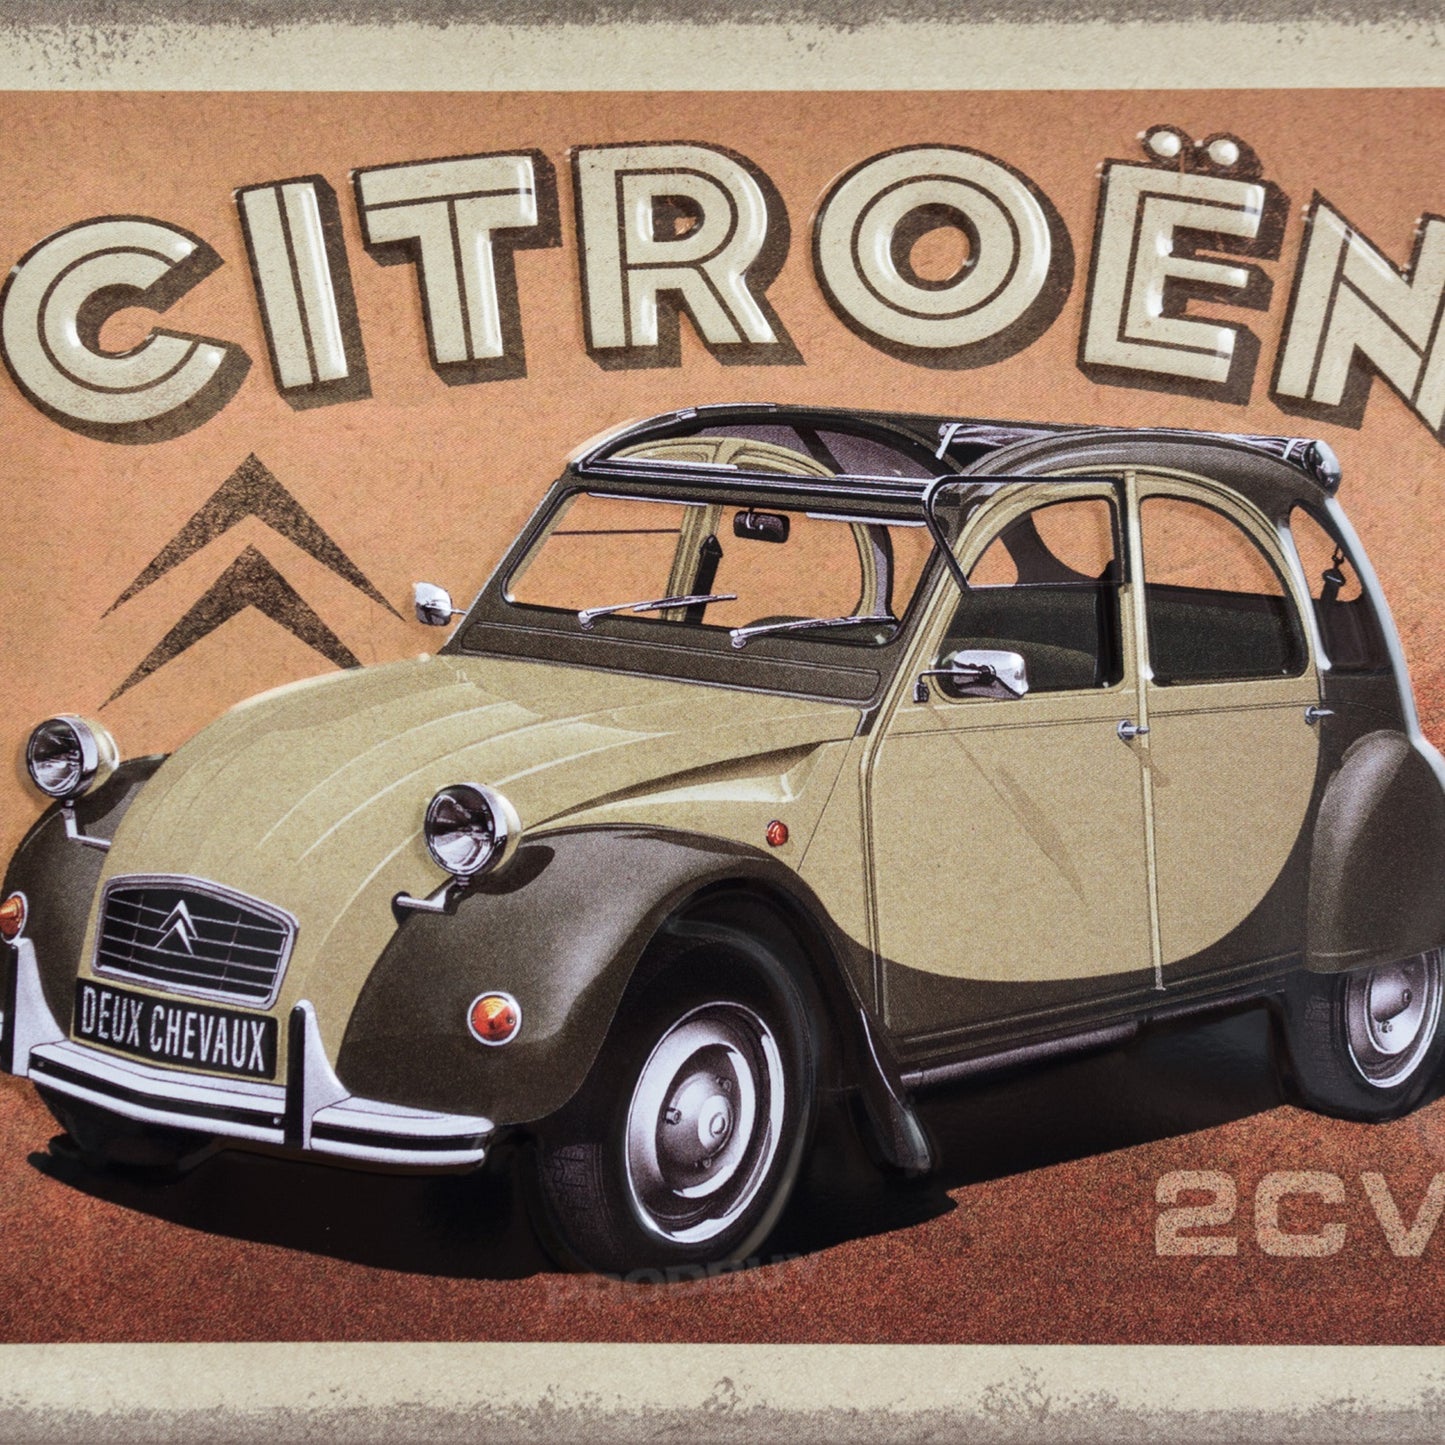 Citroën 2CV Car 20cm Metal Wall Sign